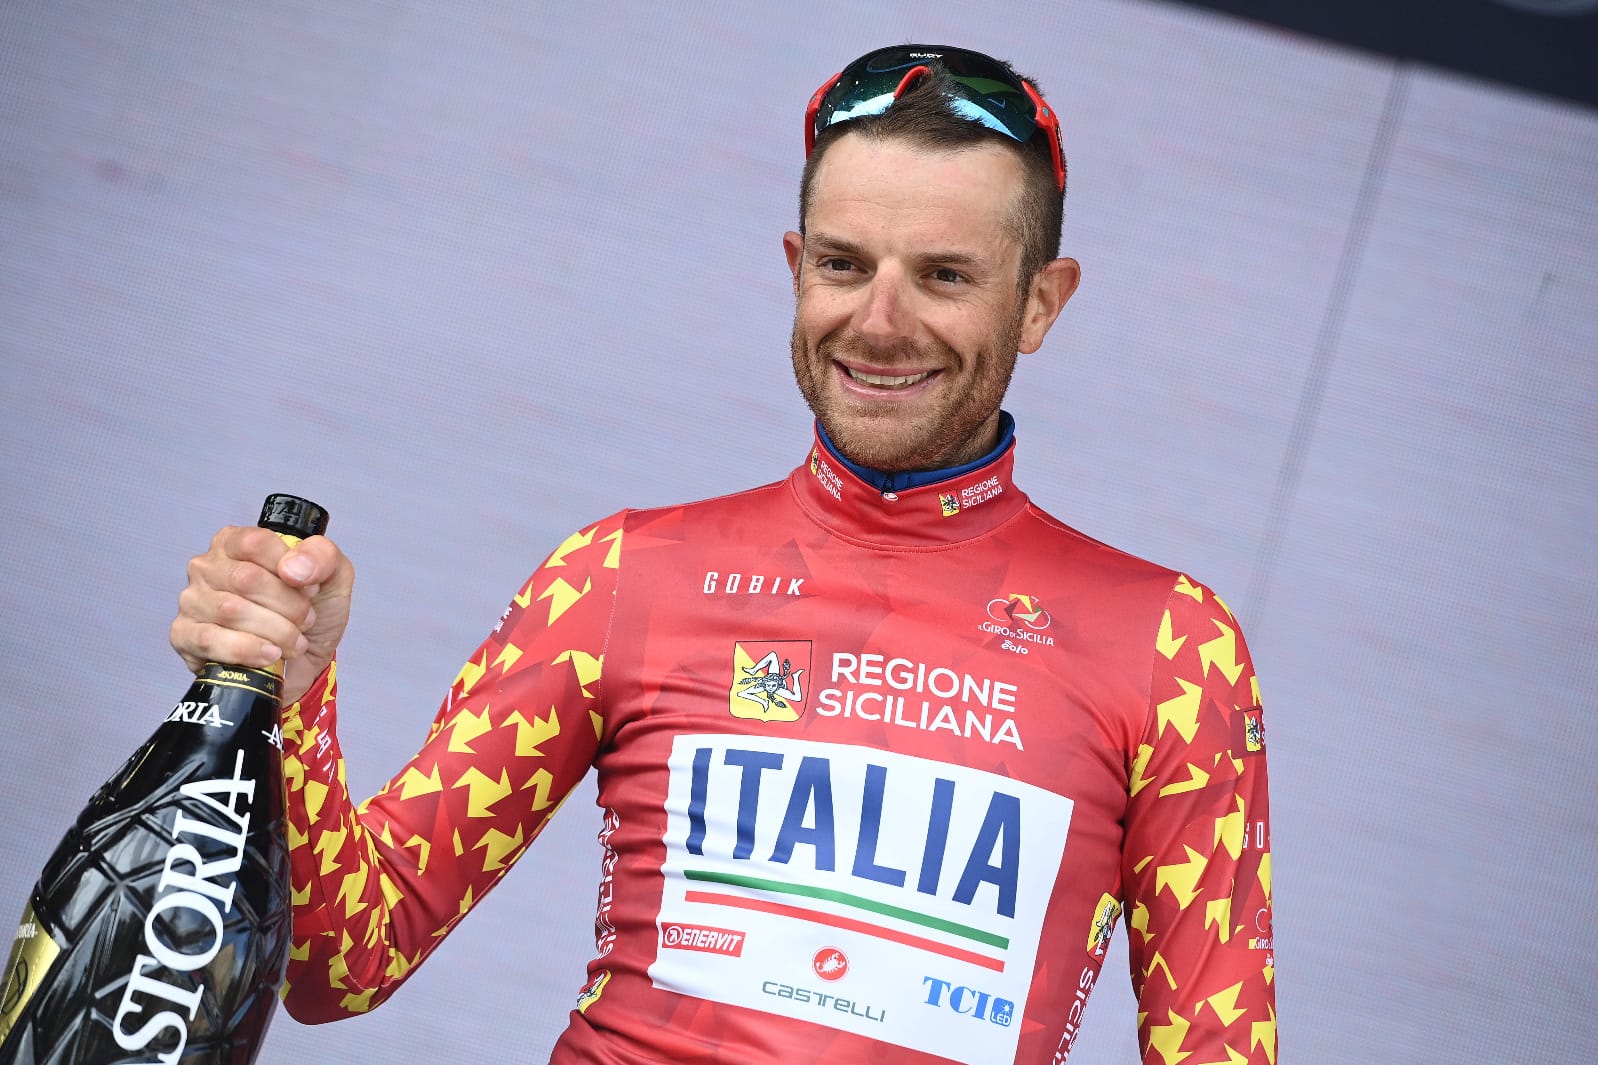 Giro di Sicilia, vince Caruso. Musumeci: “Un trionfo che regala soddisfazione”